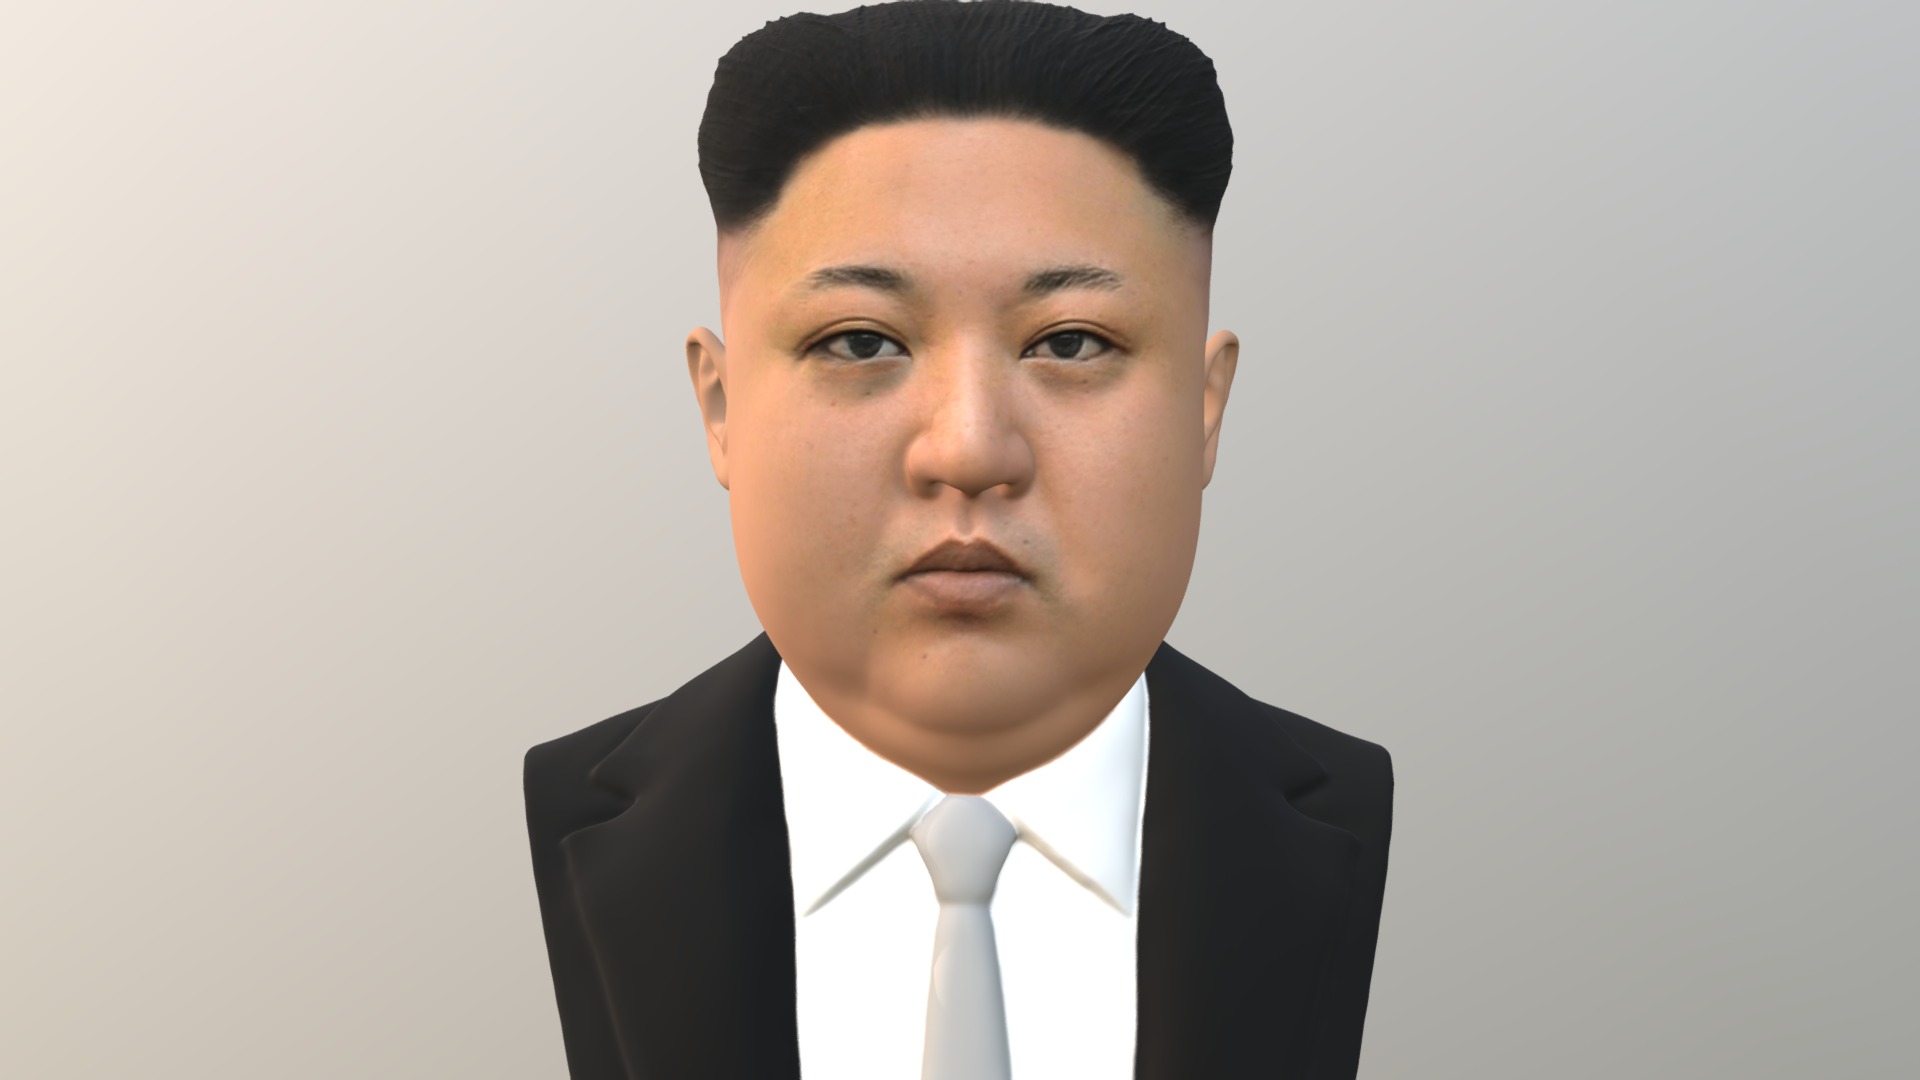 3D model Kim Jong-un bust for full color 3D printing - This is a 3D model of the Kim Jong-un bust for full color 3D printing. The 3D model is about a man in a suit.